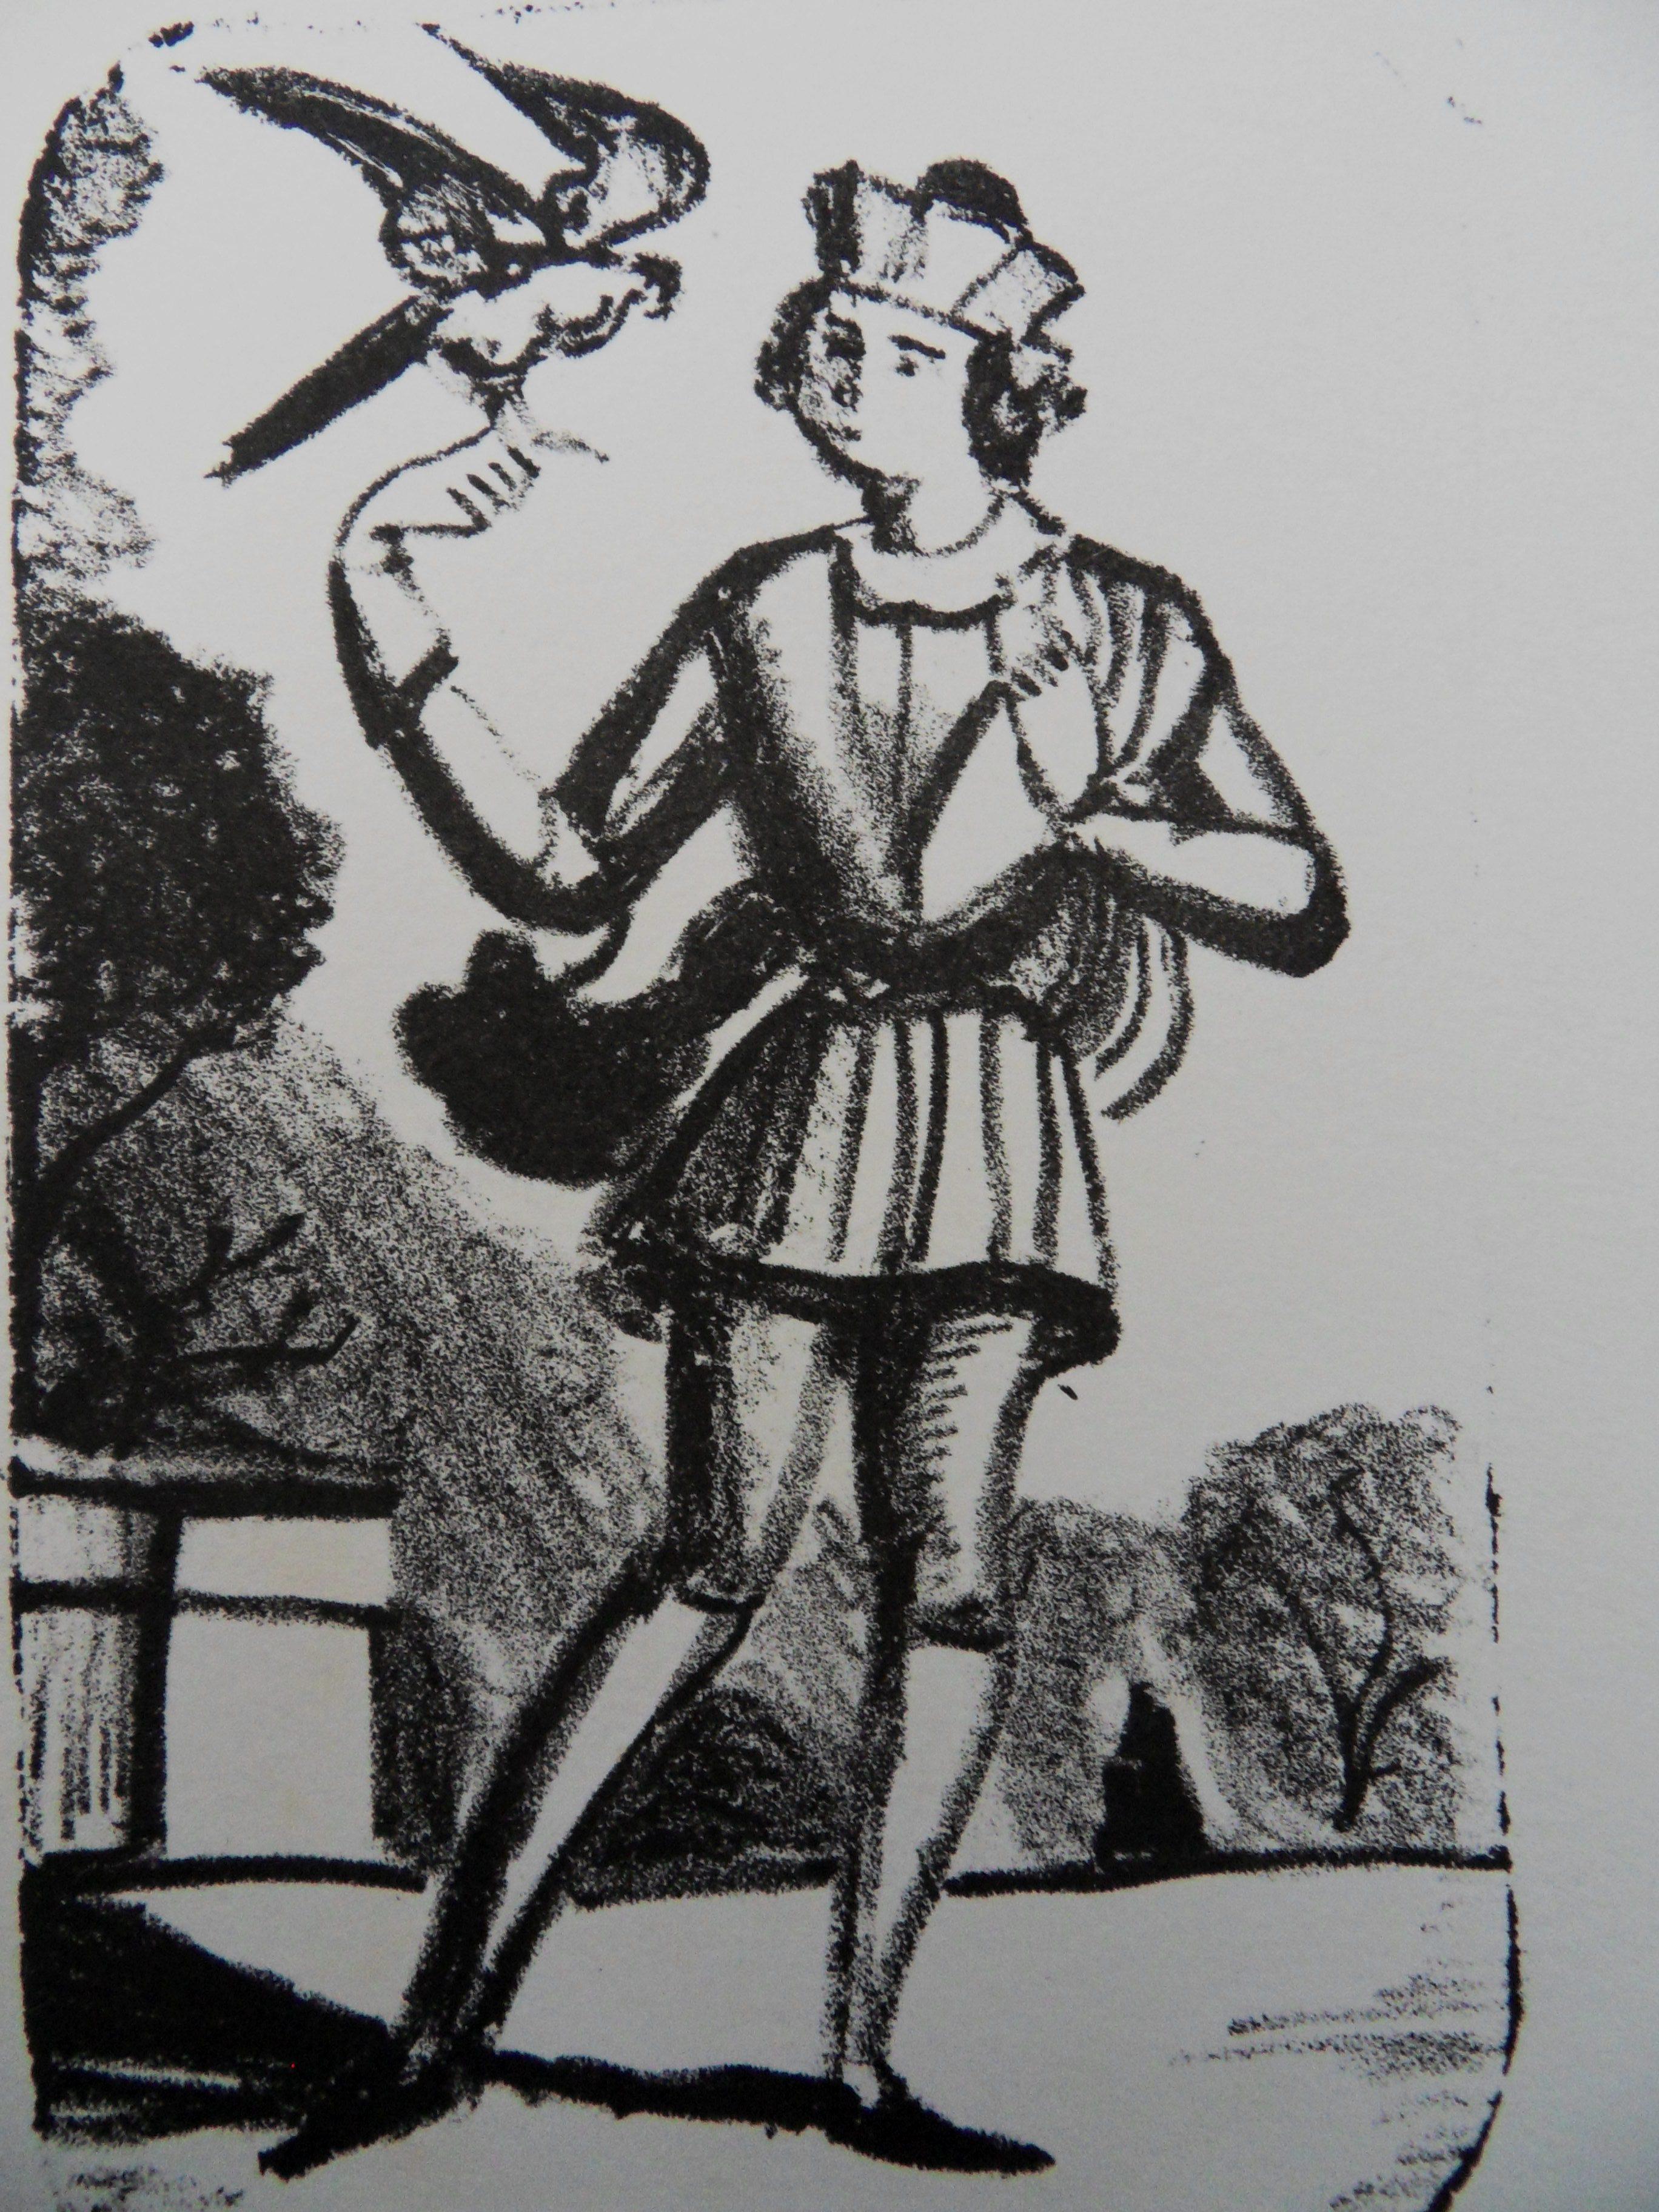 André Derain Figurative Print - The Messenger - Original lithograph, Mourlot 1950